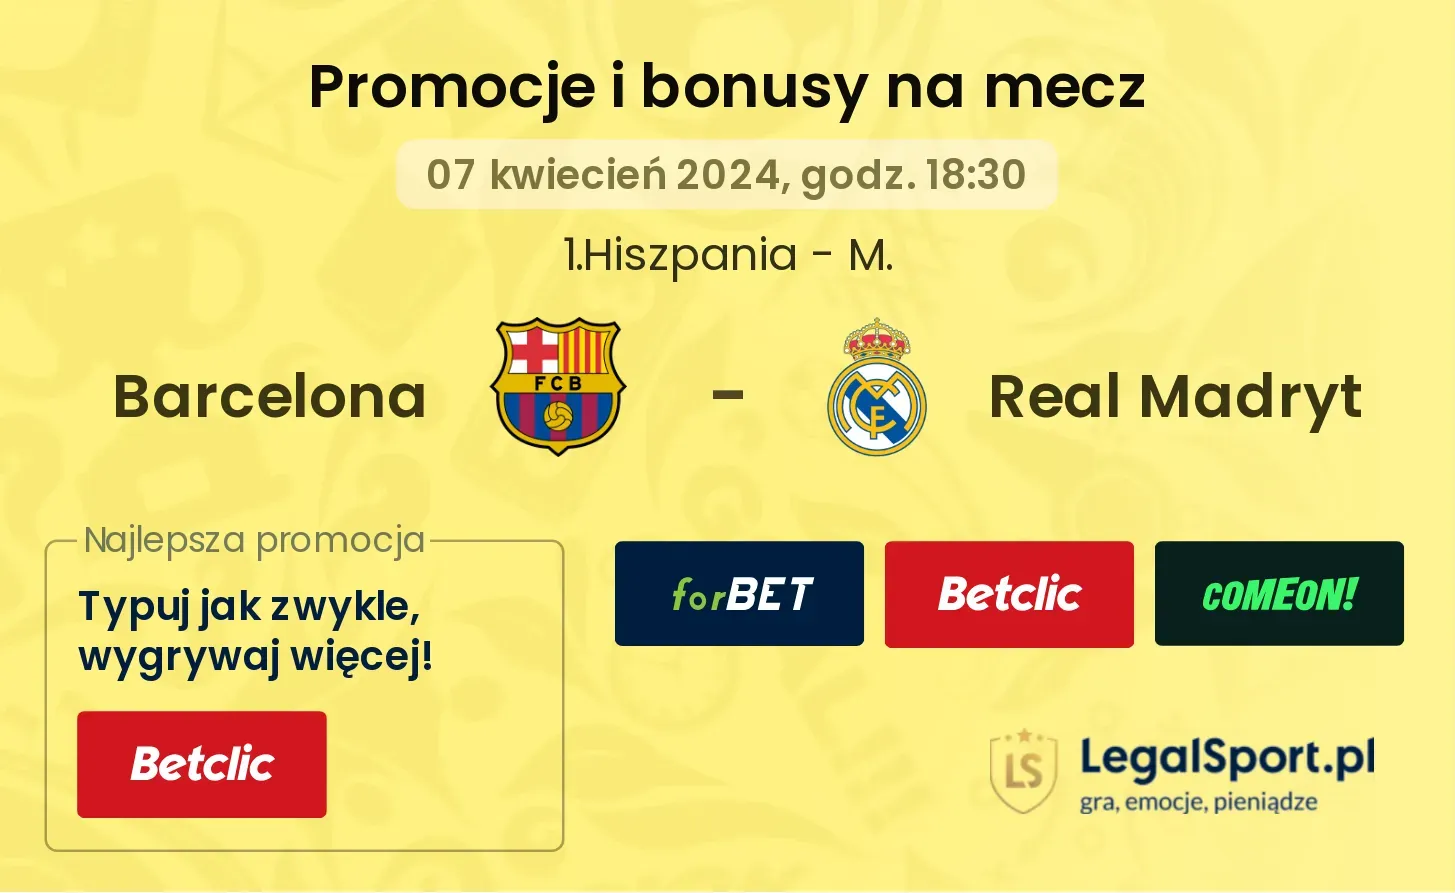 Barcelona - Real Madryt promocje bonusy na mecz